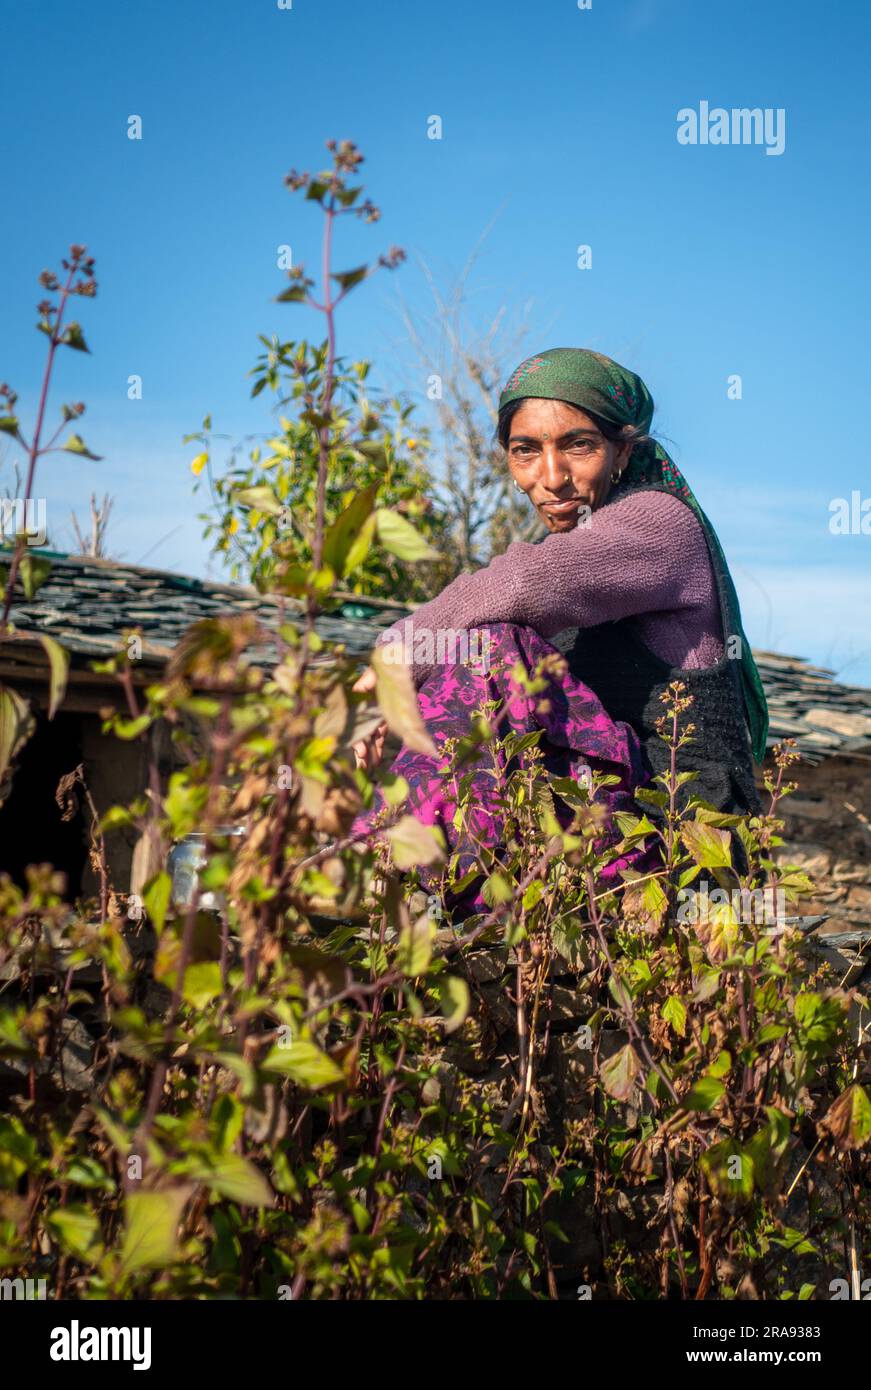 Juni 28. 2023 Uttarakhand, Indien. Eine einheimische Garhwali-Frau in traditioneller Kleidung und Kopfbedeckung. Himalaya-Region Uttarakhand. Stockfoto